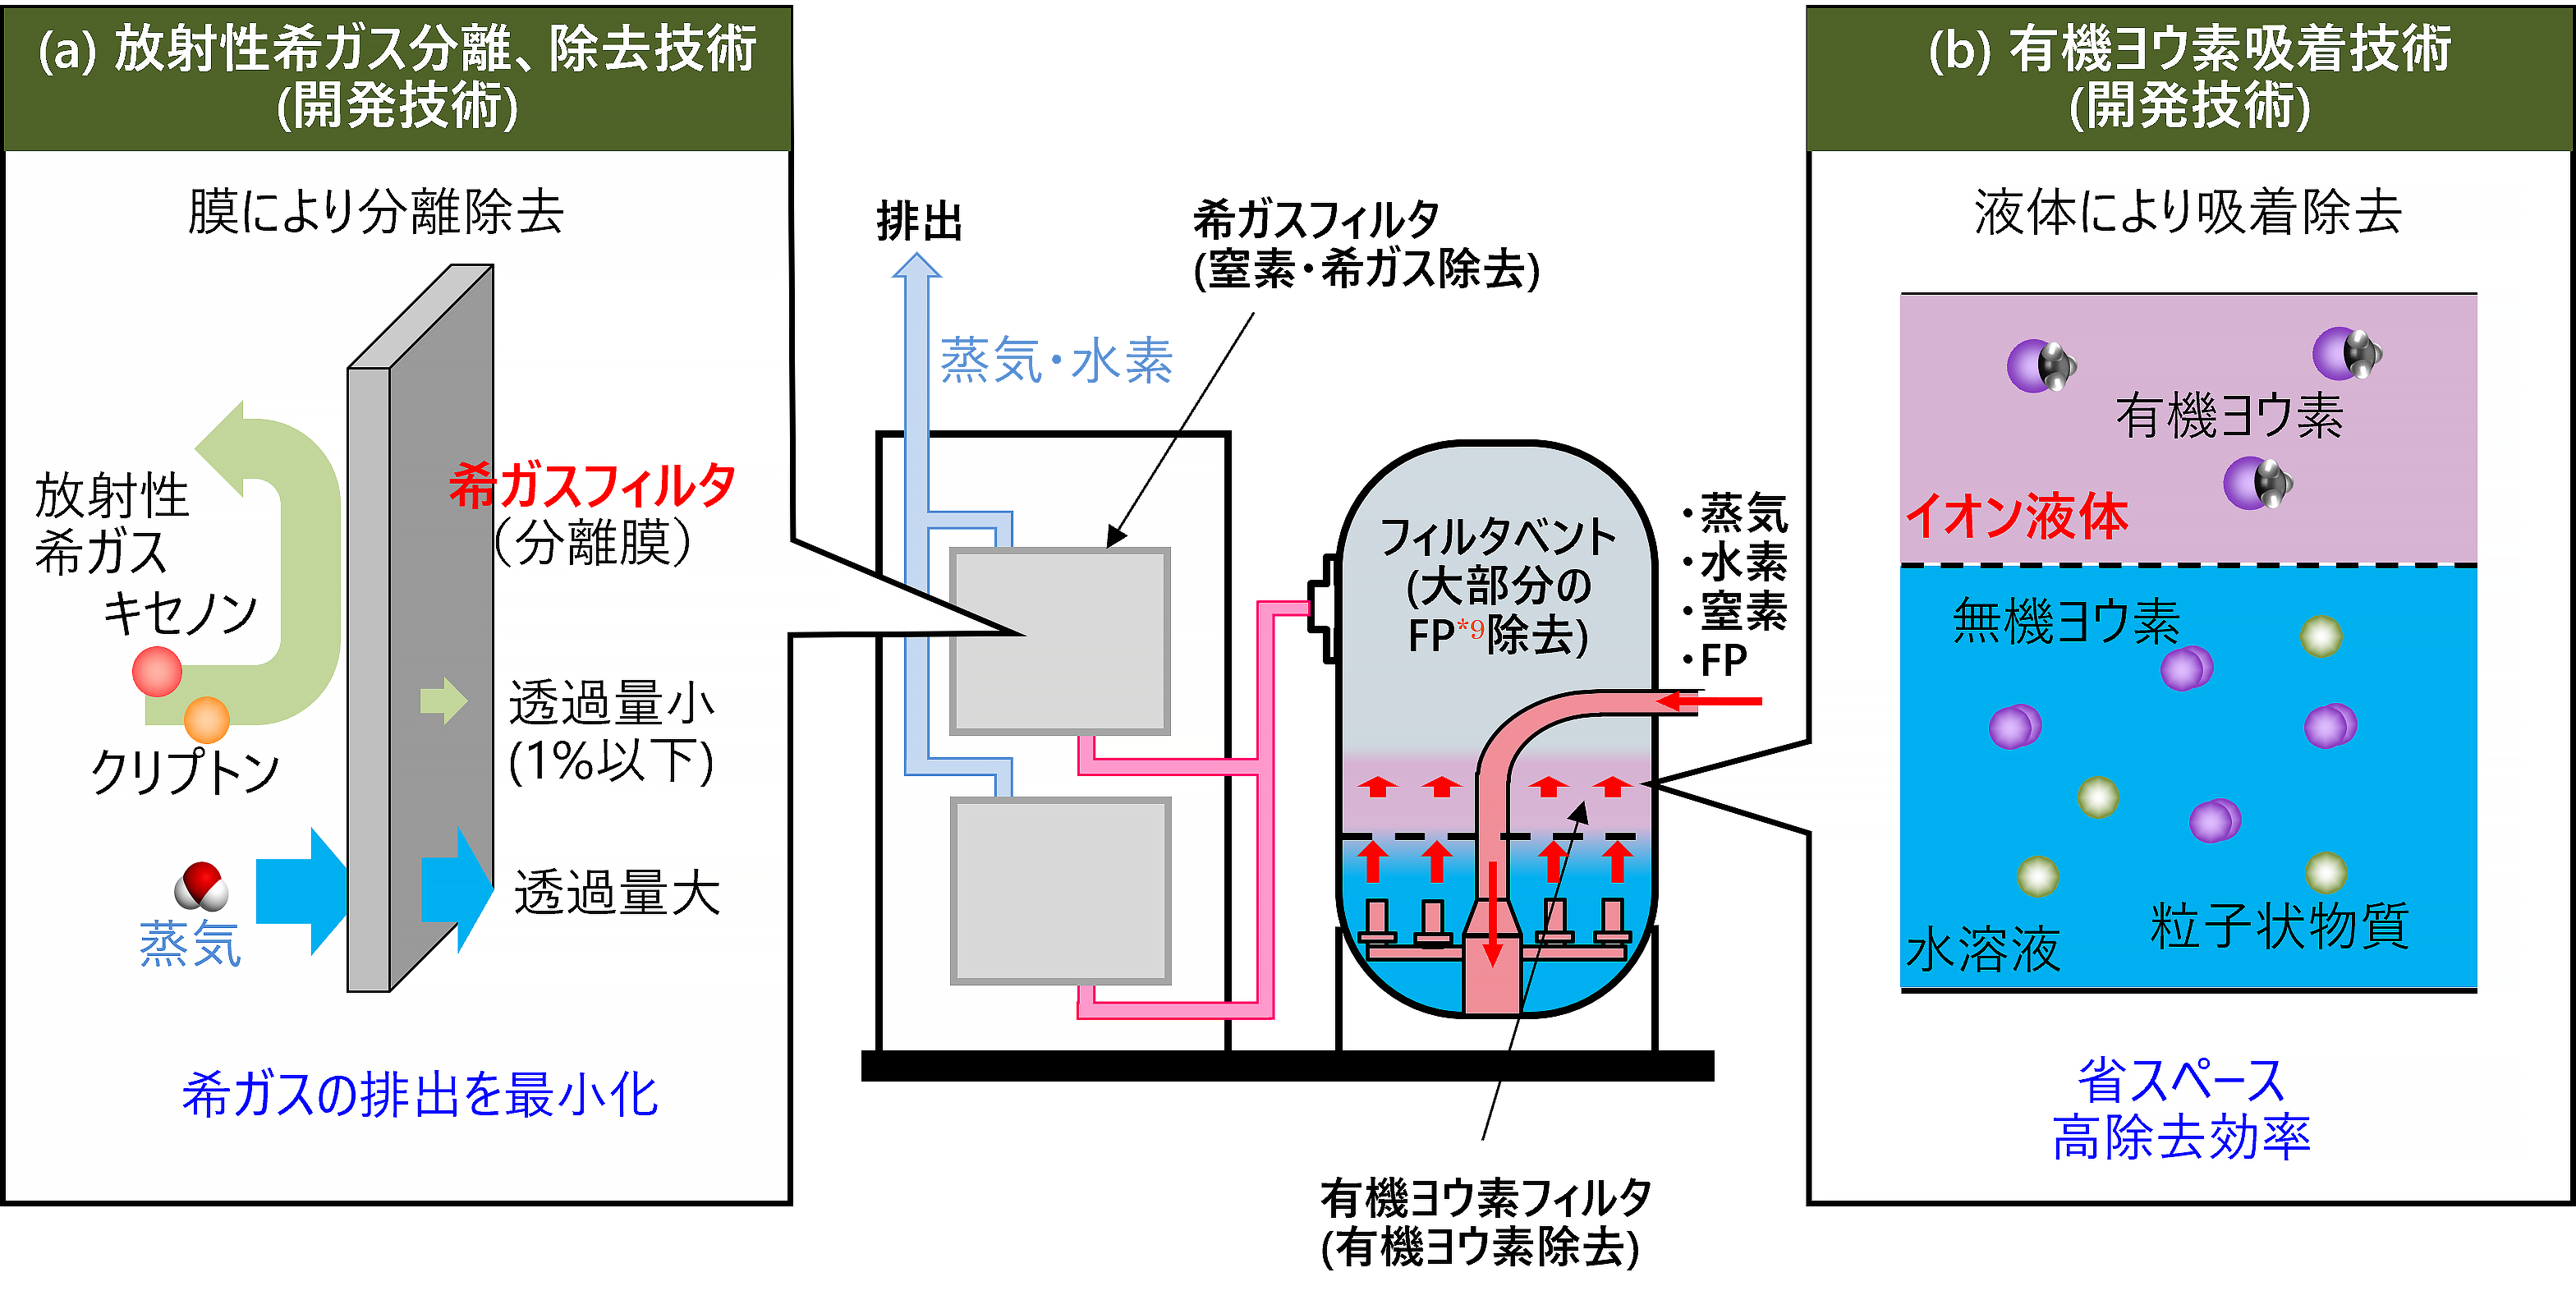 図1. 放射性物質閉じ込めシステム